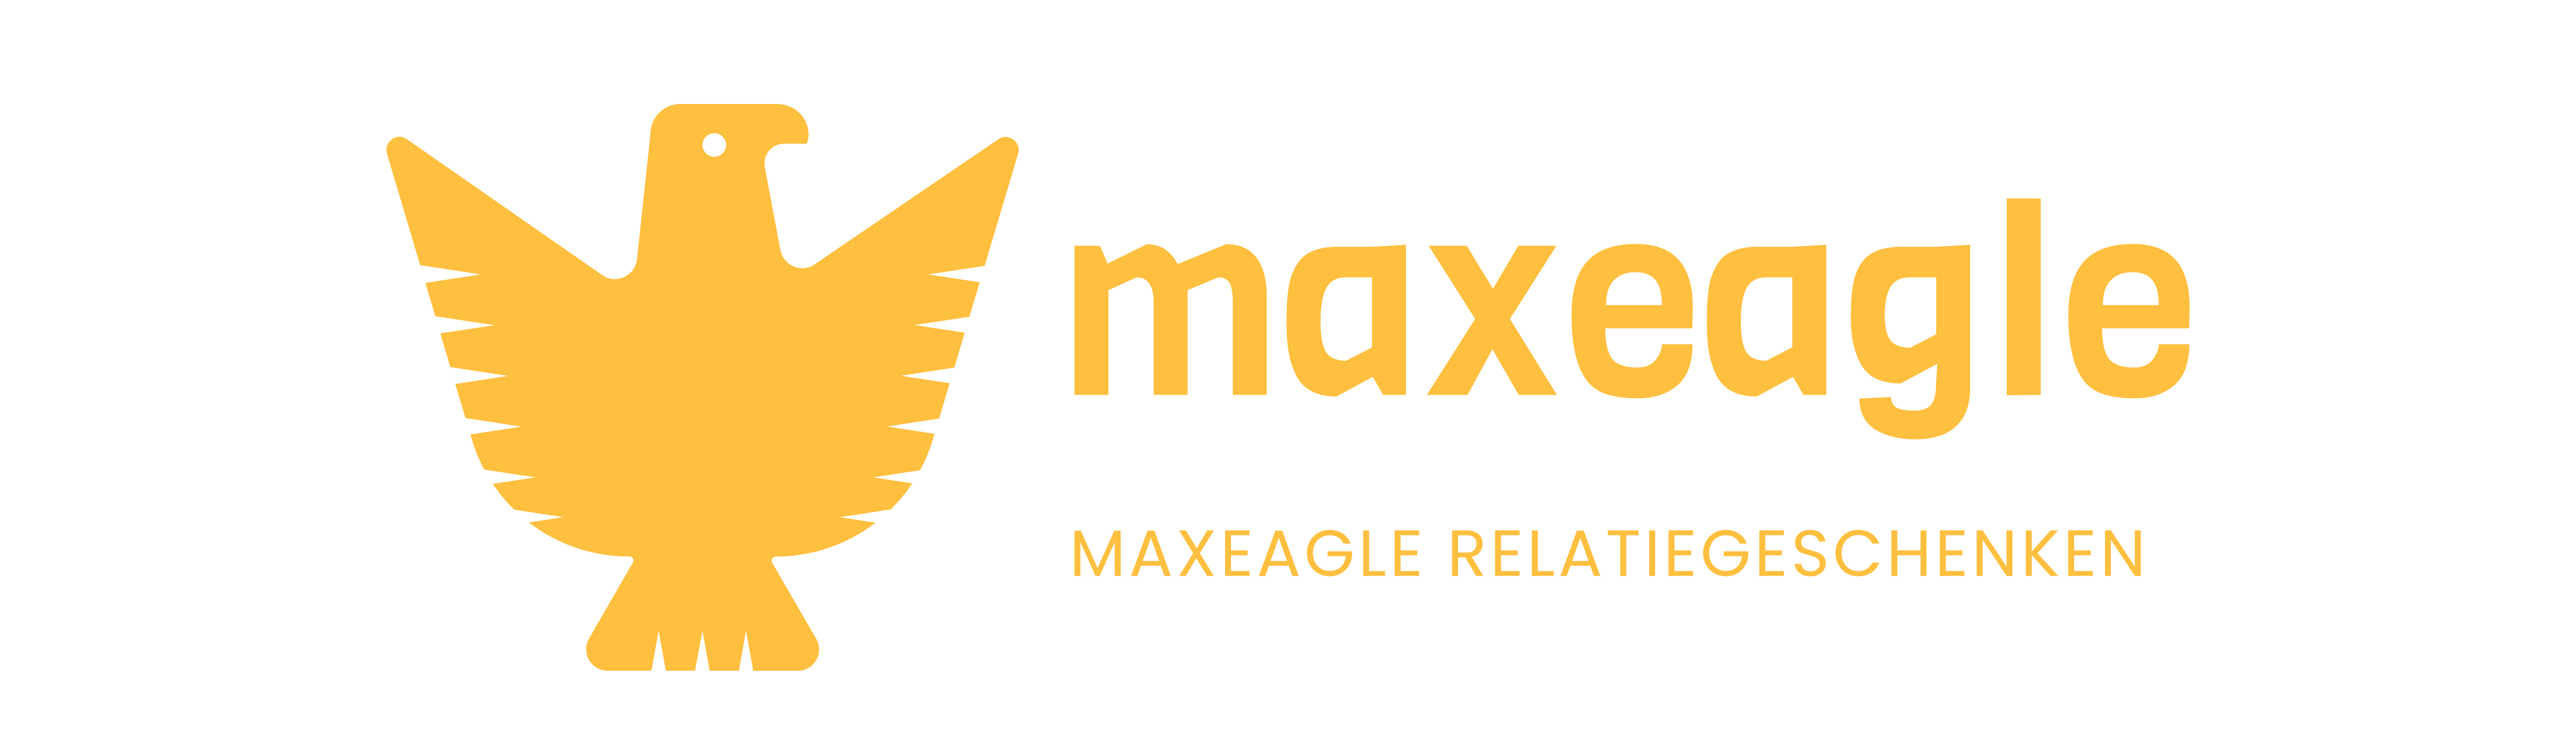 Maxeagle